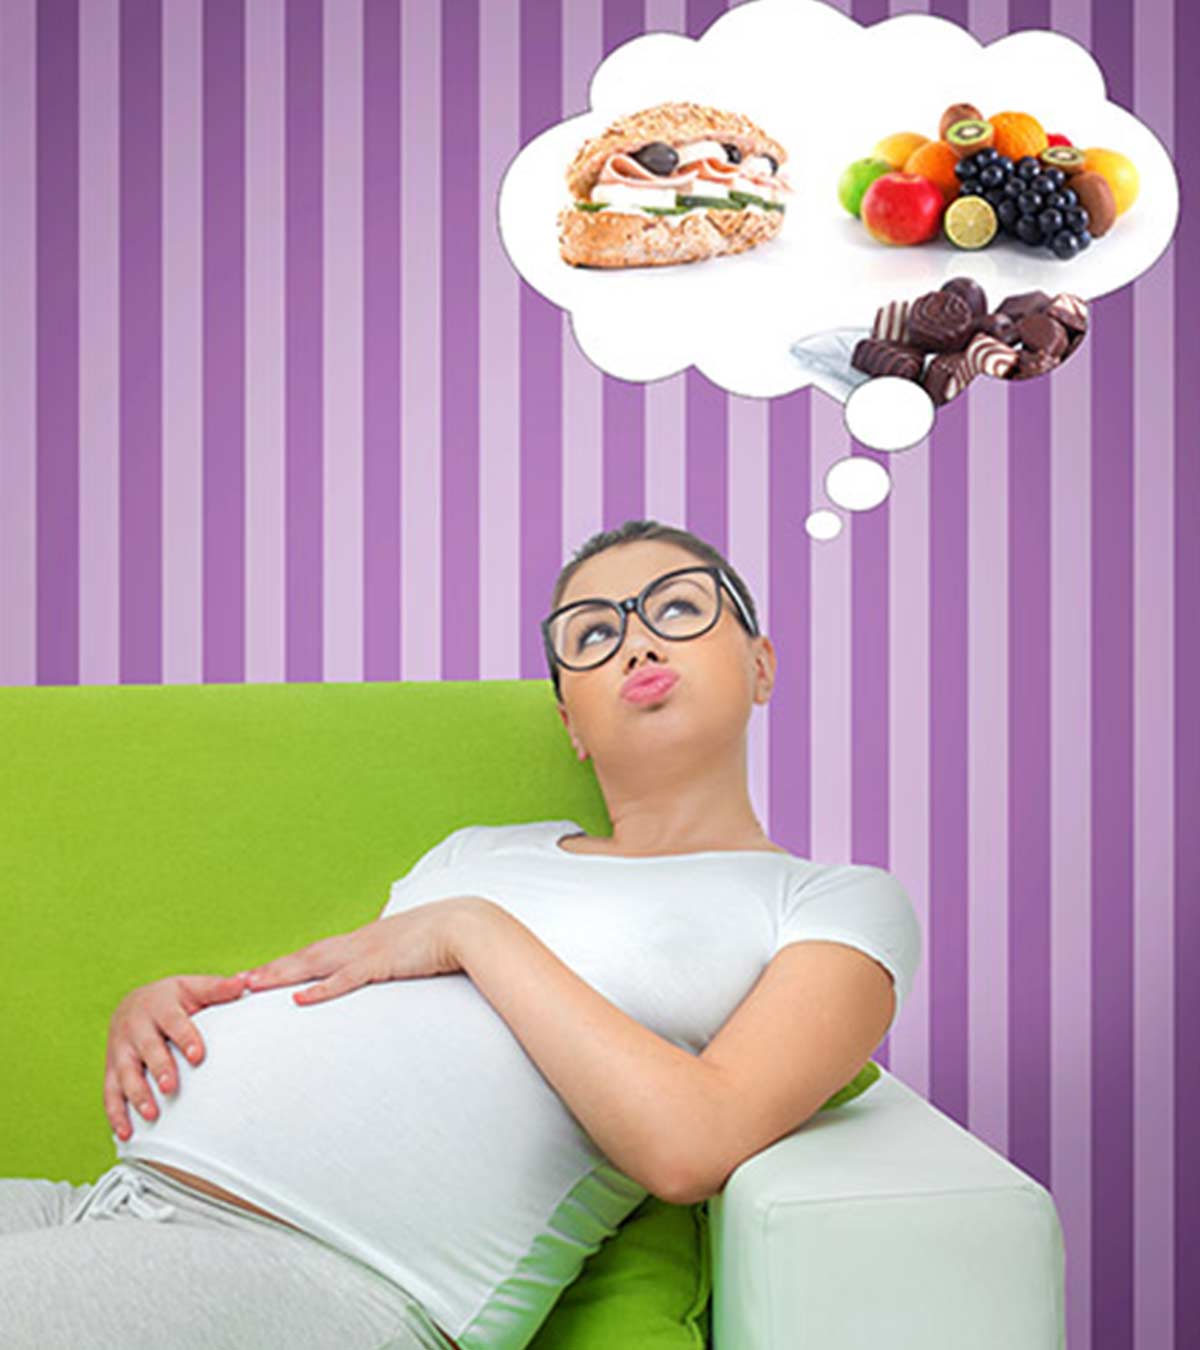 प्रेगनेंसी में व्रत या उपवास रखना चाहिए या नहीं? | Pregnancy Me Fast Rakhna Chahiye